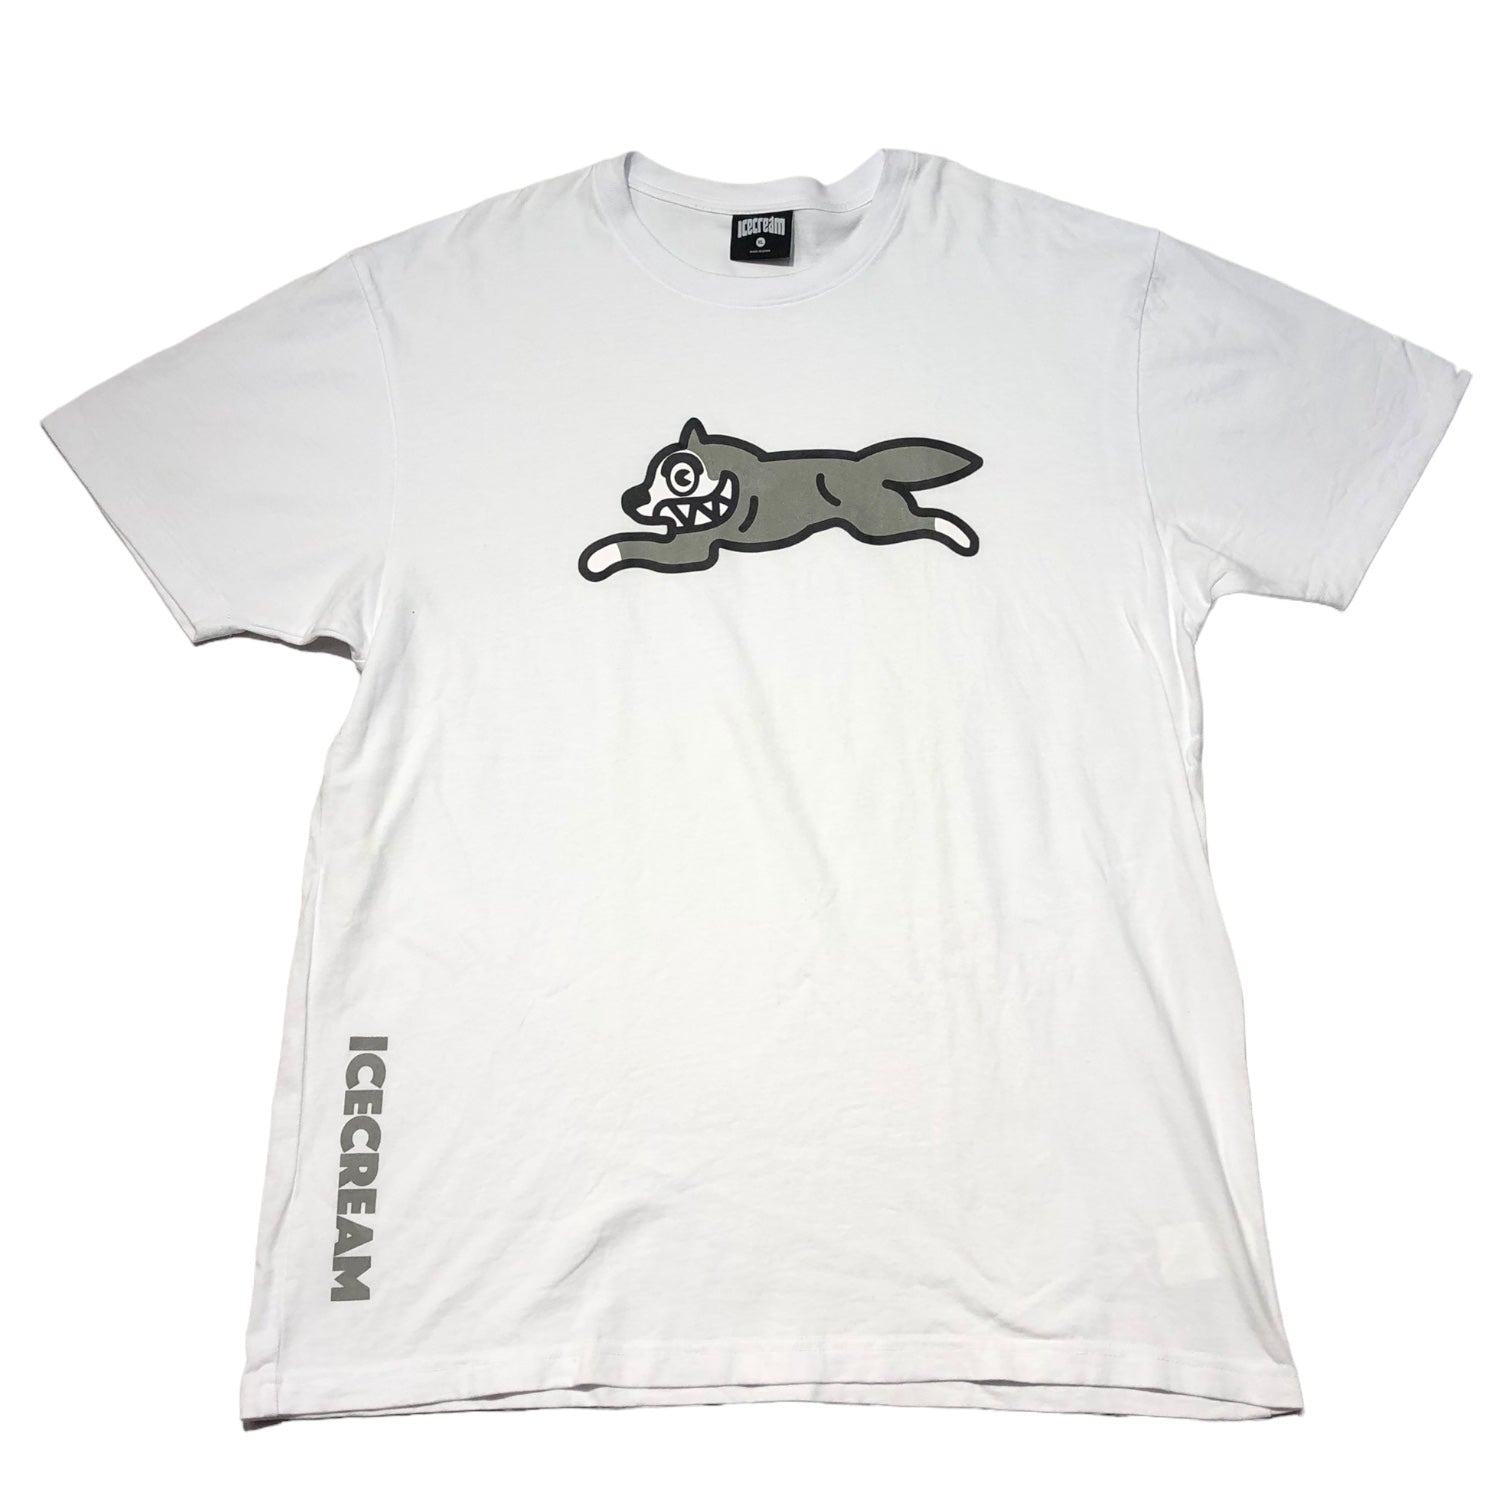 ICE CREAM(アイスクリーム) Running dog logo tee ランニングドッグ ロゴ Tシャツ 401-4203 XL ホワイト×シルバー